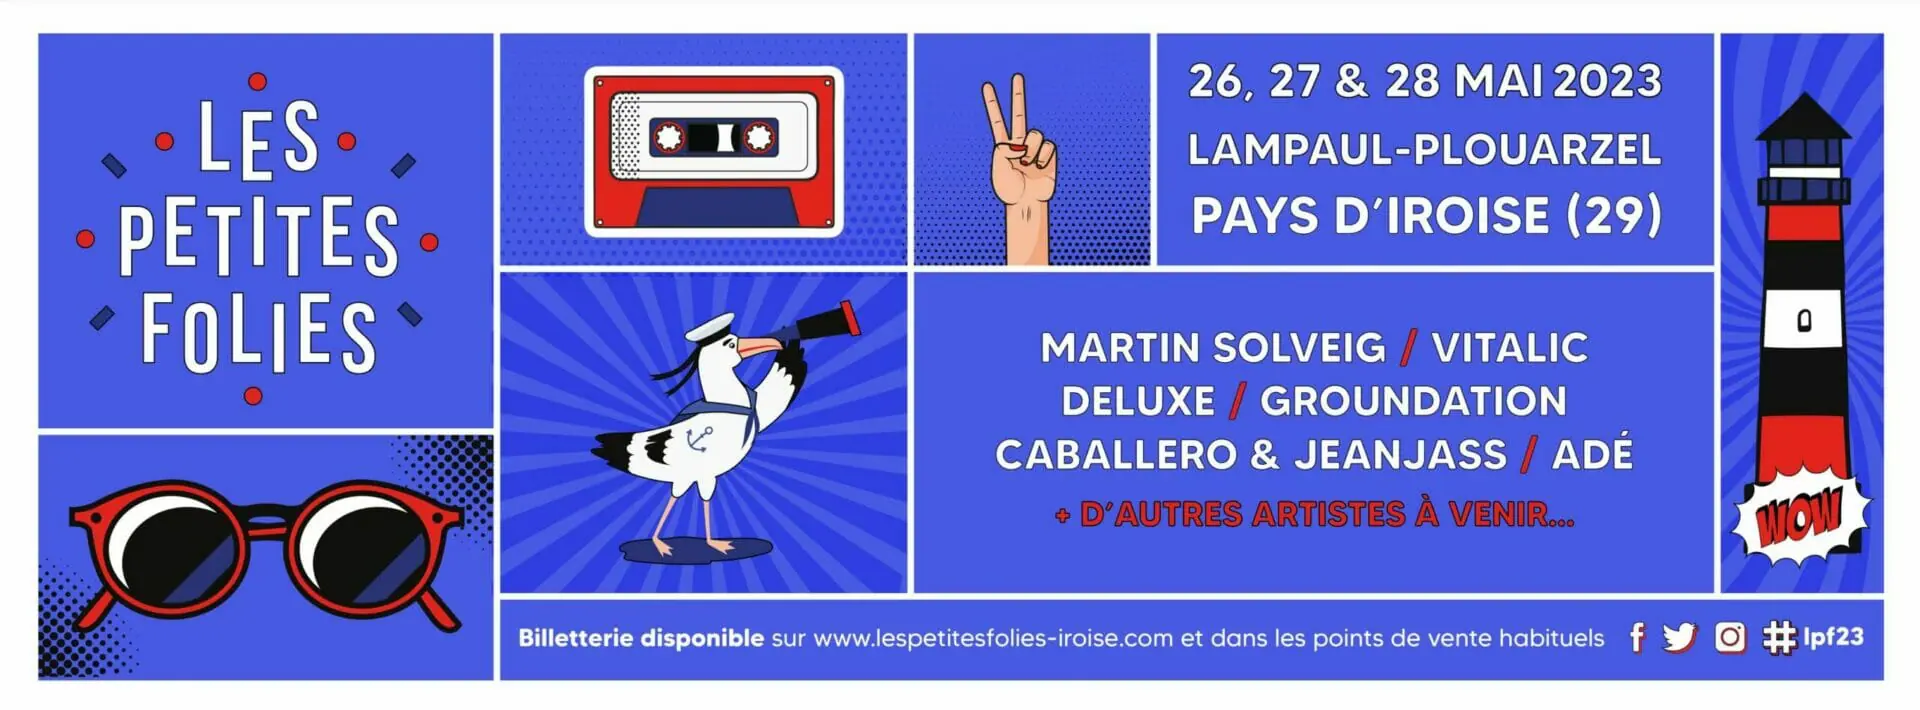 Festival Les Petites Folies en pays d’Iroise, du 26 au 28 mai 2023